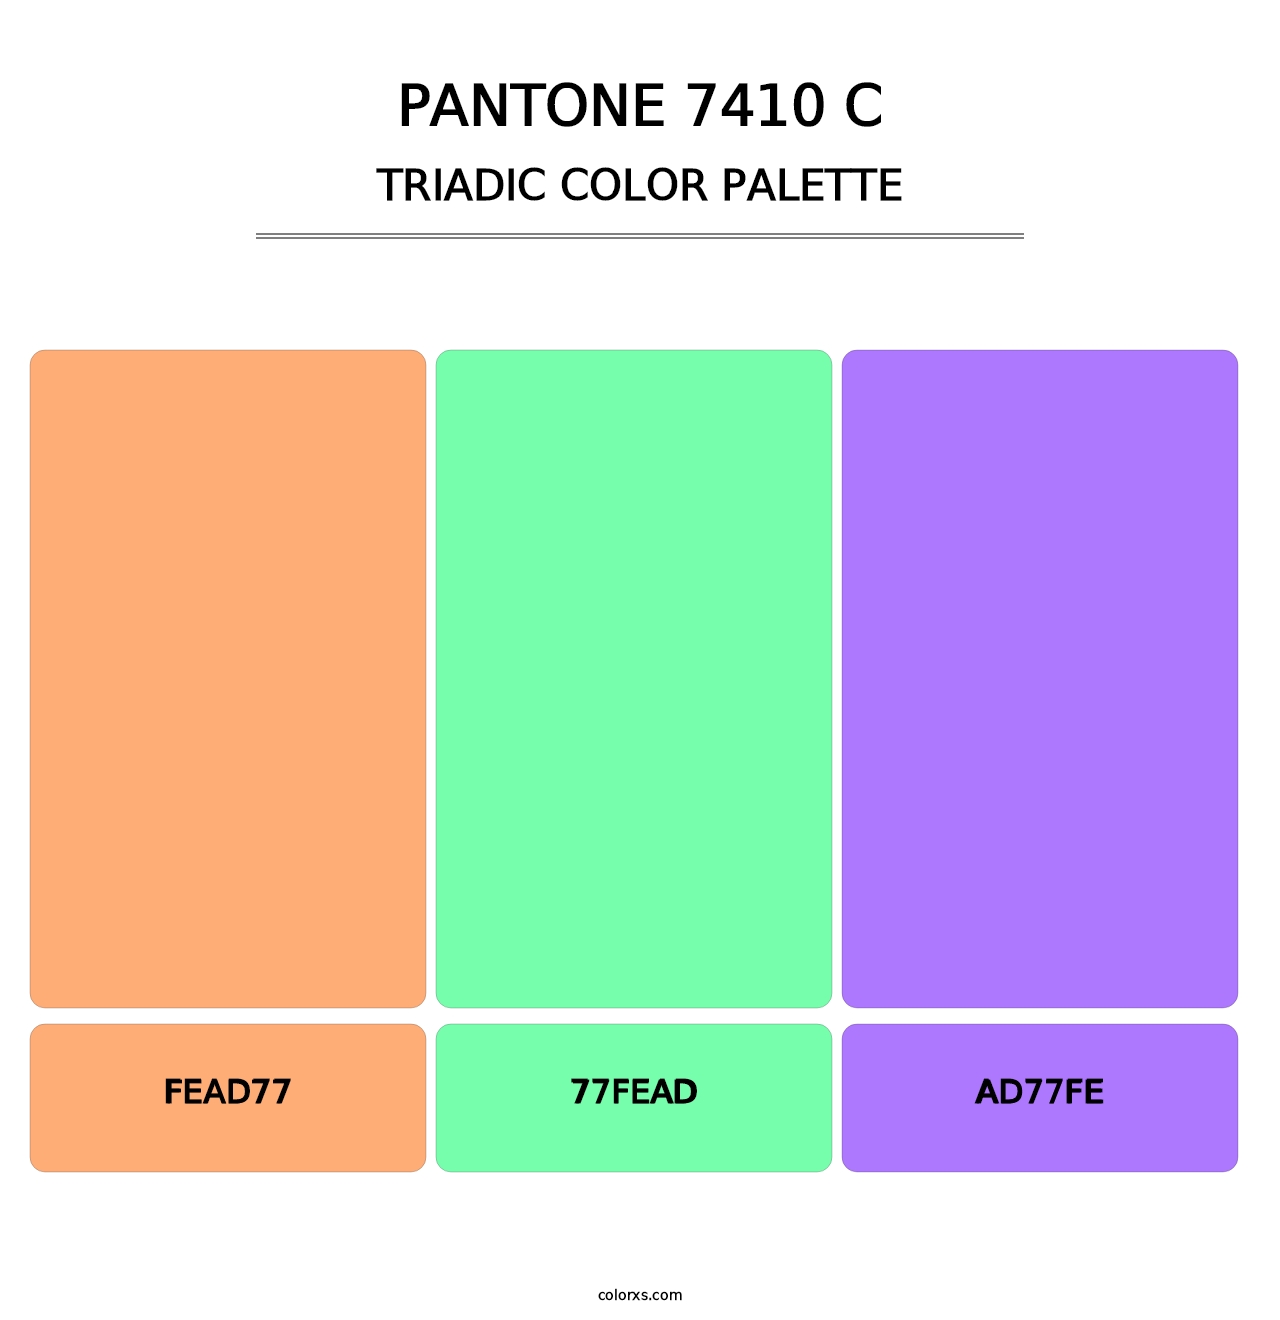 PANTONE 7410 C - Triadic Color Palette